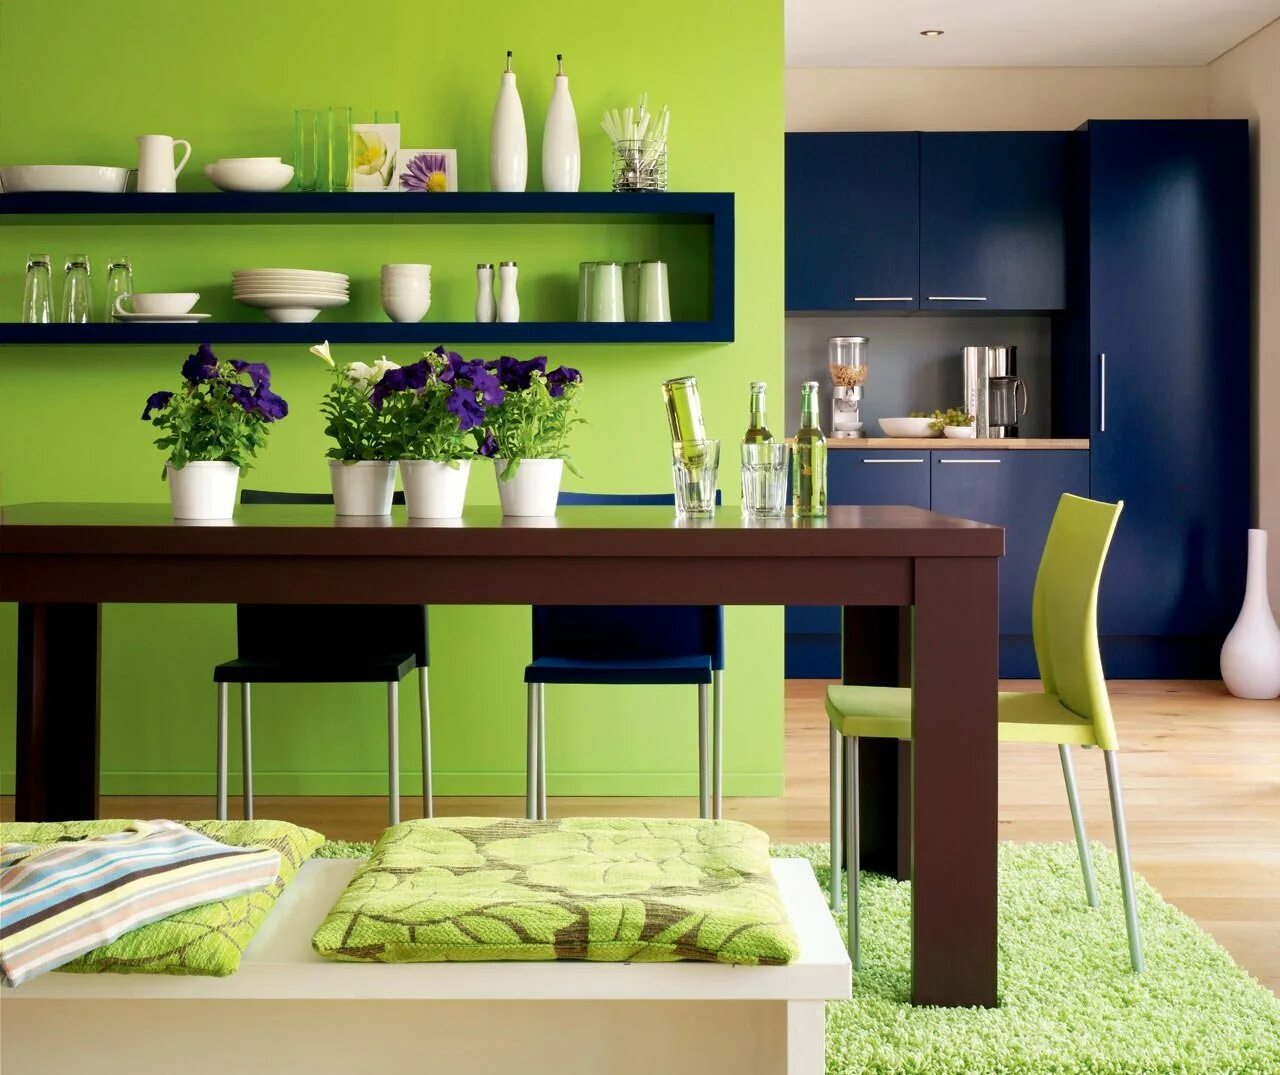 Какие цвета сочетаются на кухне. Сочетание цветов в интерьере кухни. Кухня зеленого цвета. Кухня салатного цвета в интерьере. Фисташковая кухня в интерьере.